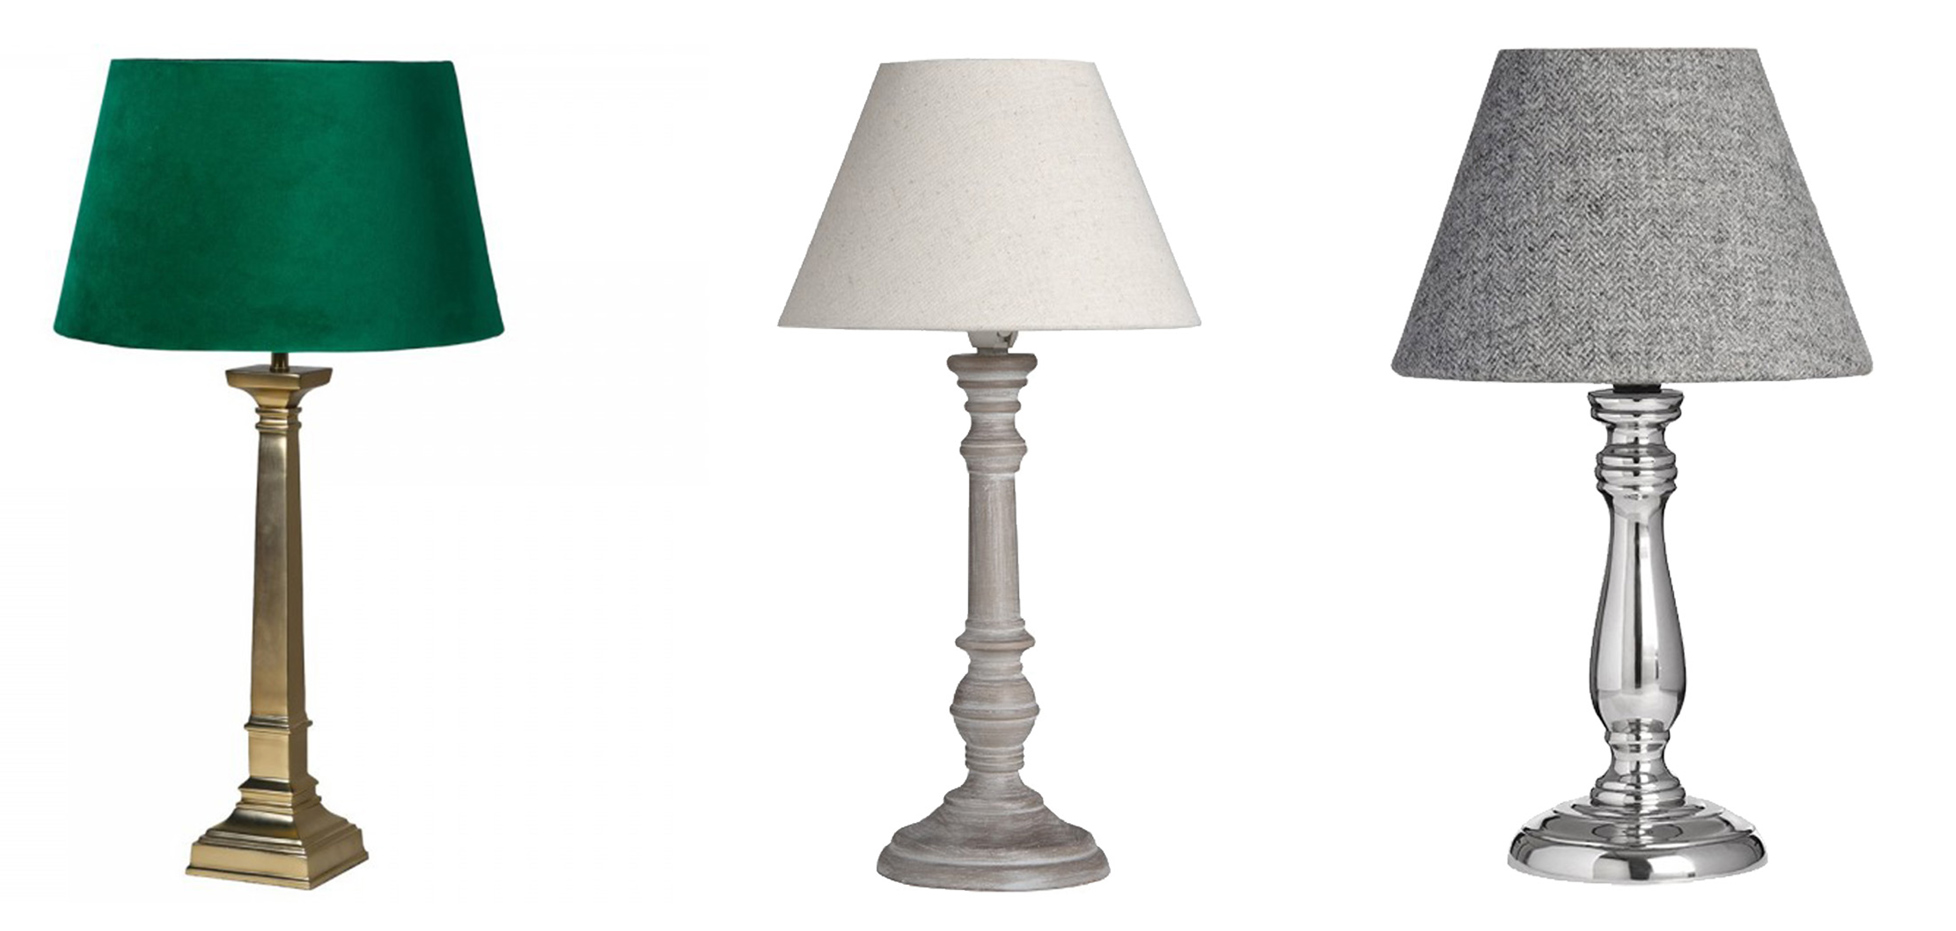 Designová vintage zlato-zelená lampa Pericles, Venkovská stolní lampa Pella, Designová chromová stolní lampa Fewlson